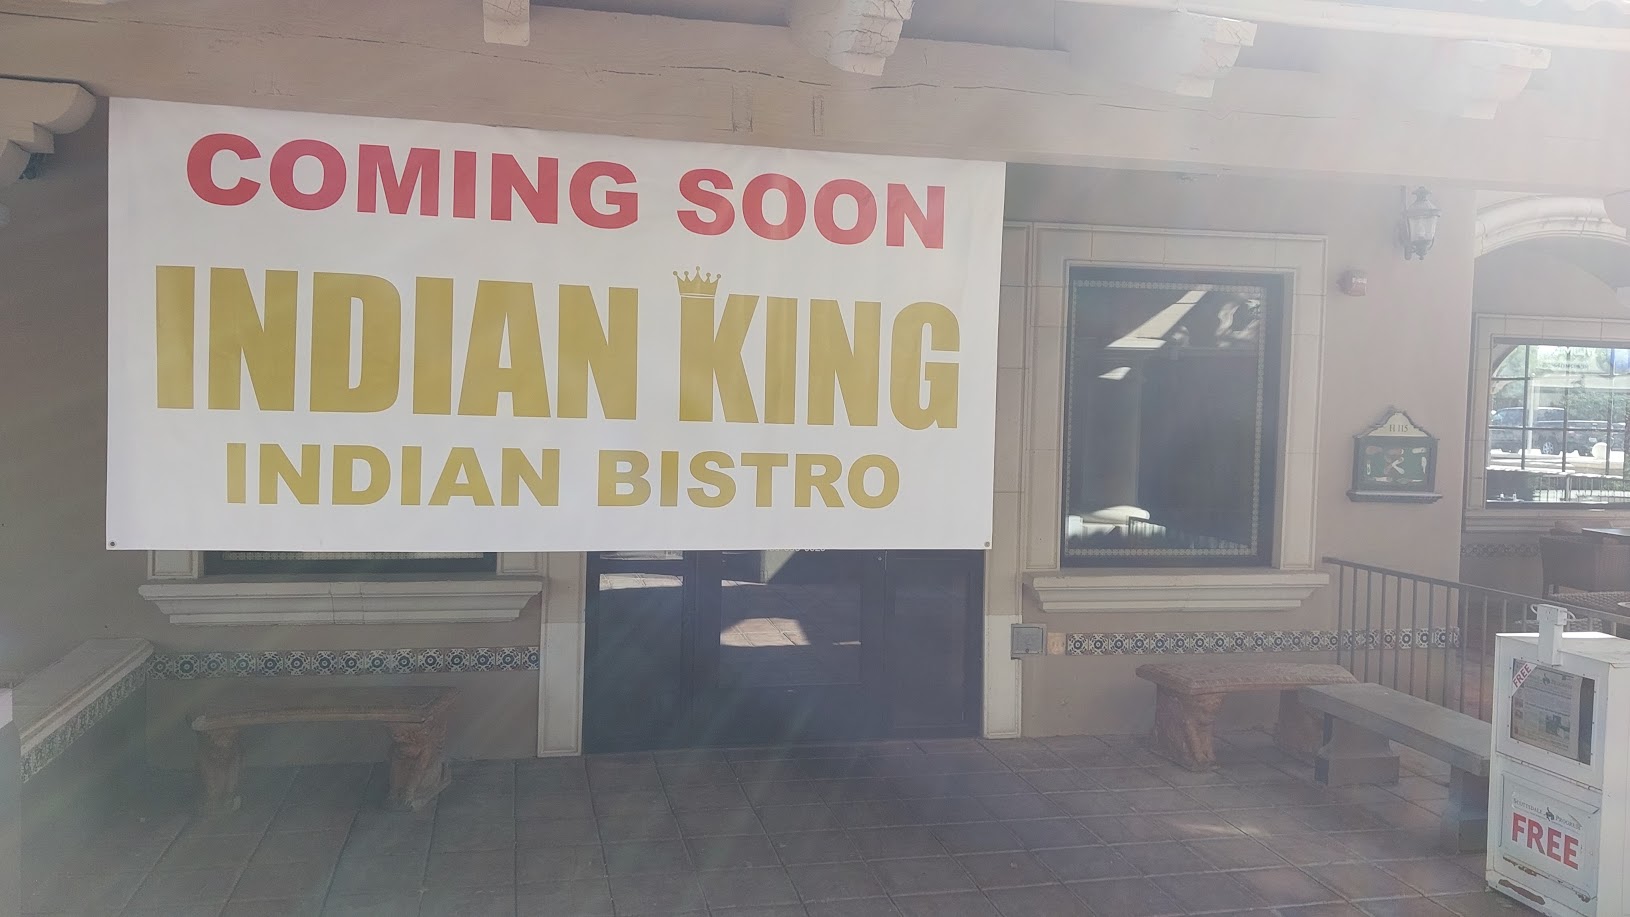 Indian King Indian Bistro